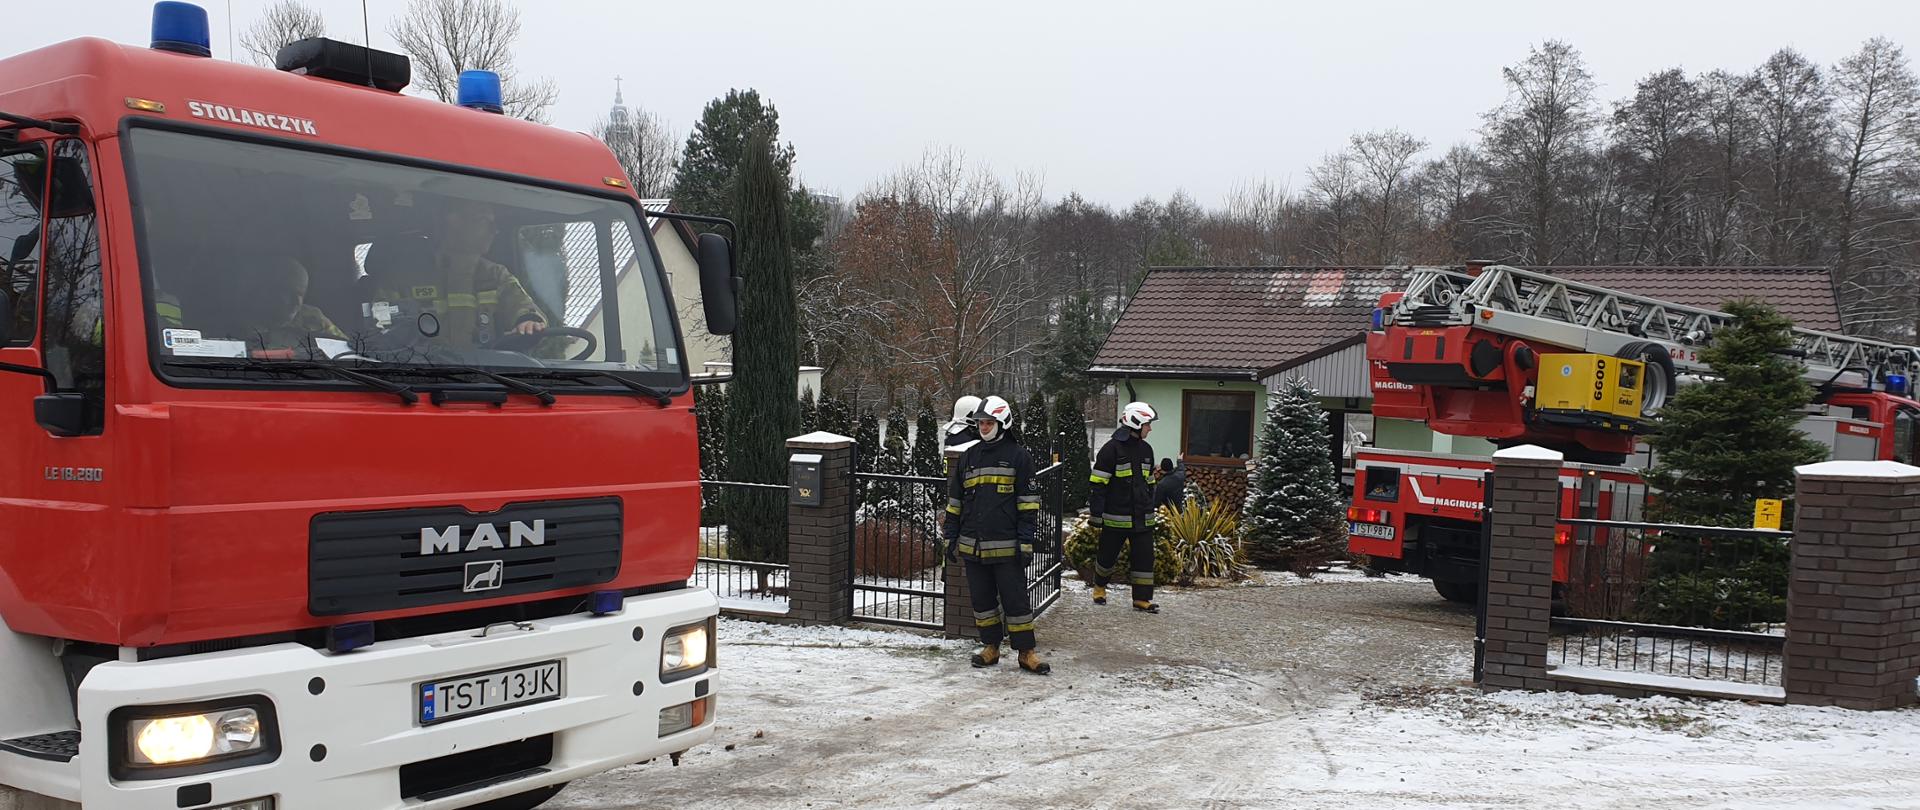 Samochody pożarnicze GCBA , SD-23 oraz dwóch ratowników OSP na posesji przed uszkodzonym w wyniku pożaru budynkiem, pora dzienna mała pokrywa śniegu.